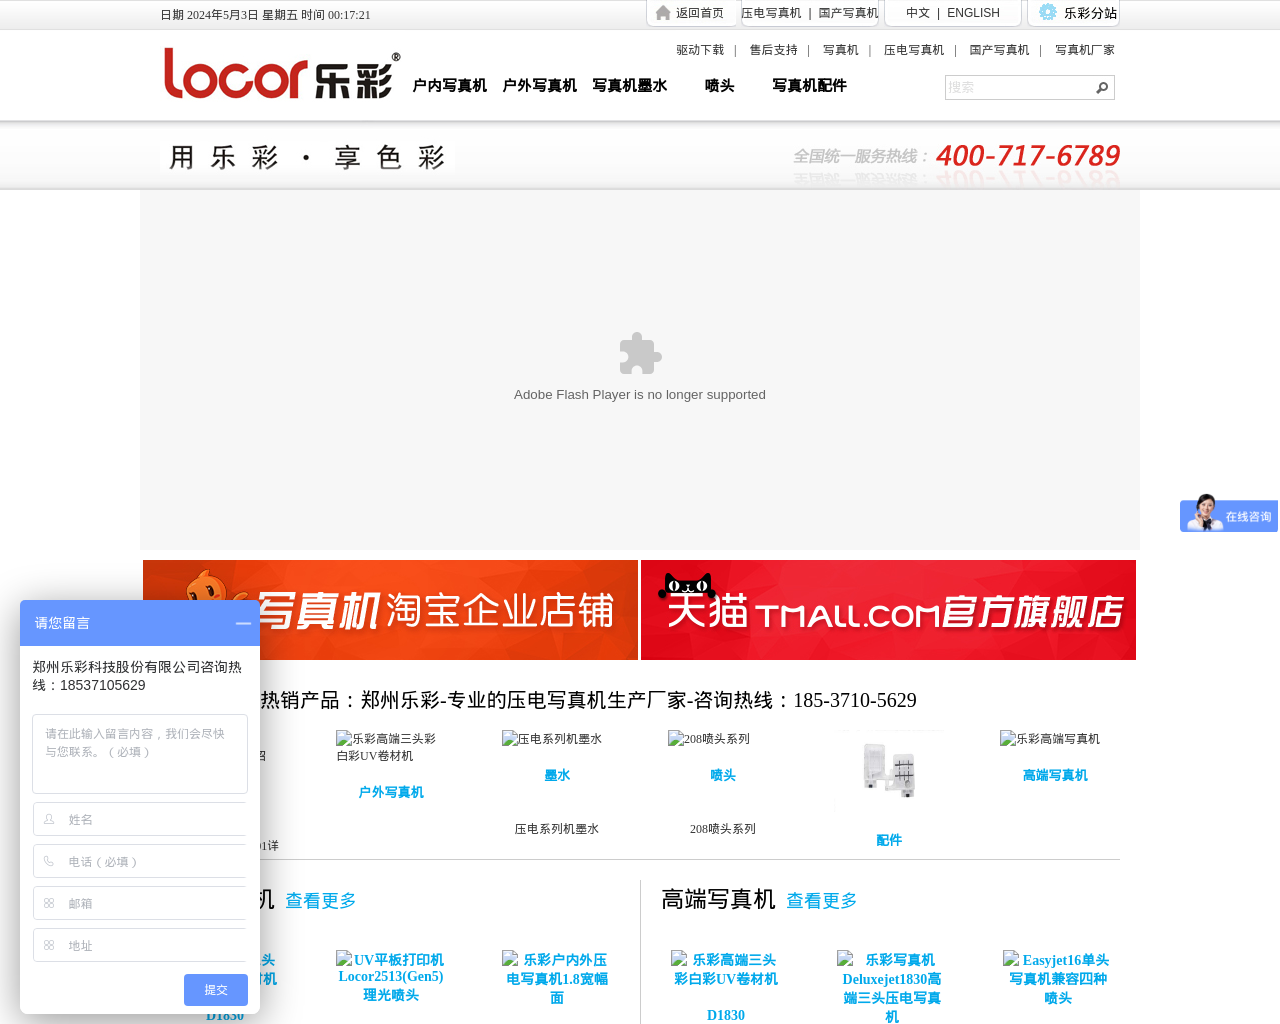 lecai.com.cn